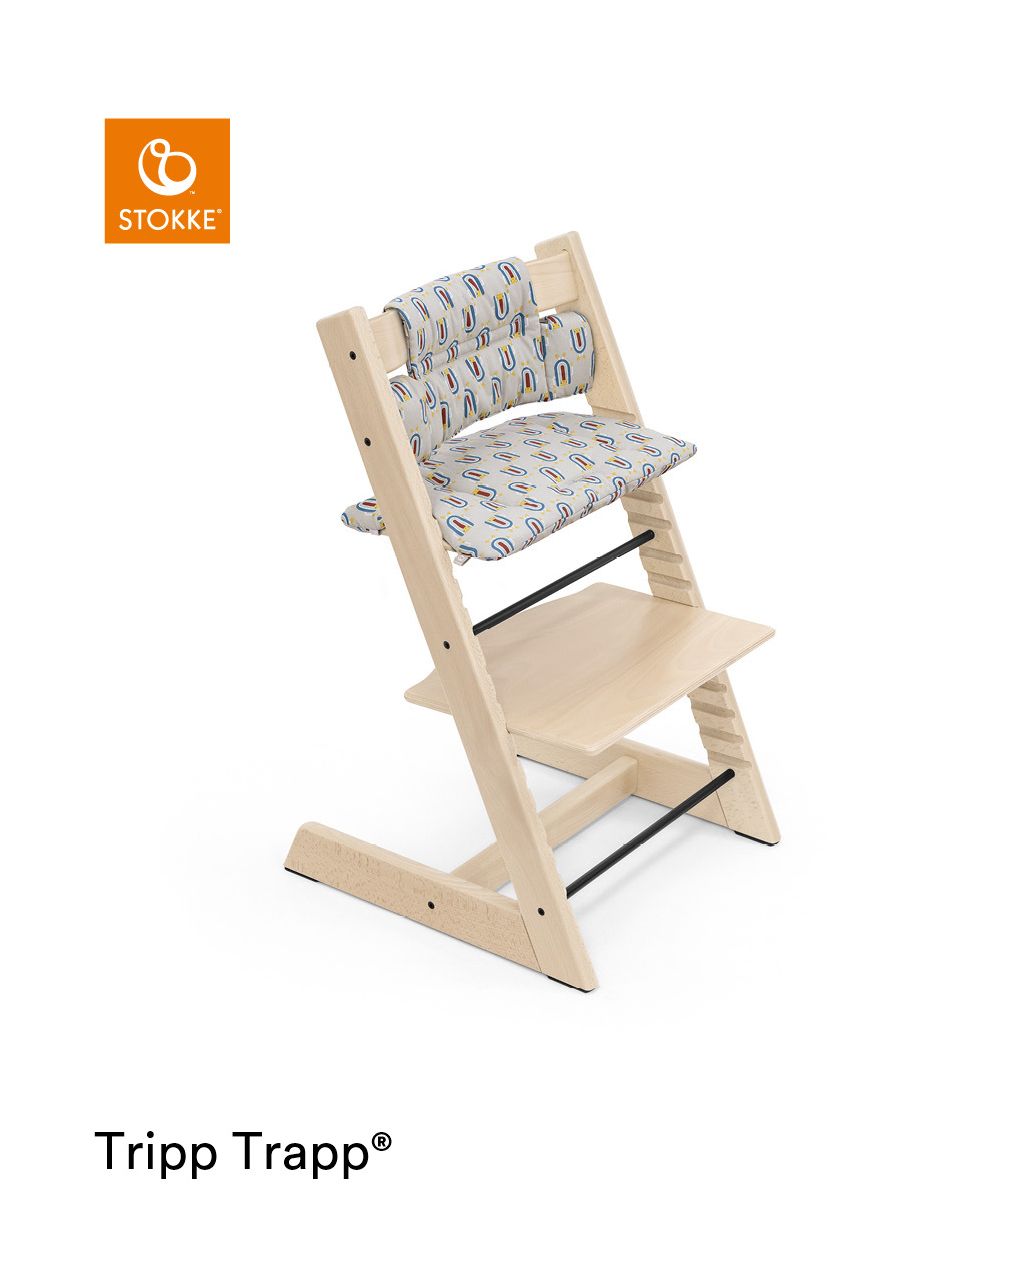 Almofada tripp trapp® classic robô cinza ocs almofada para cadeira alta, macia e abraços para seu bebê - Stokke